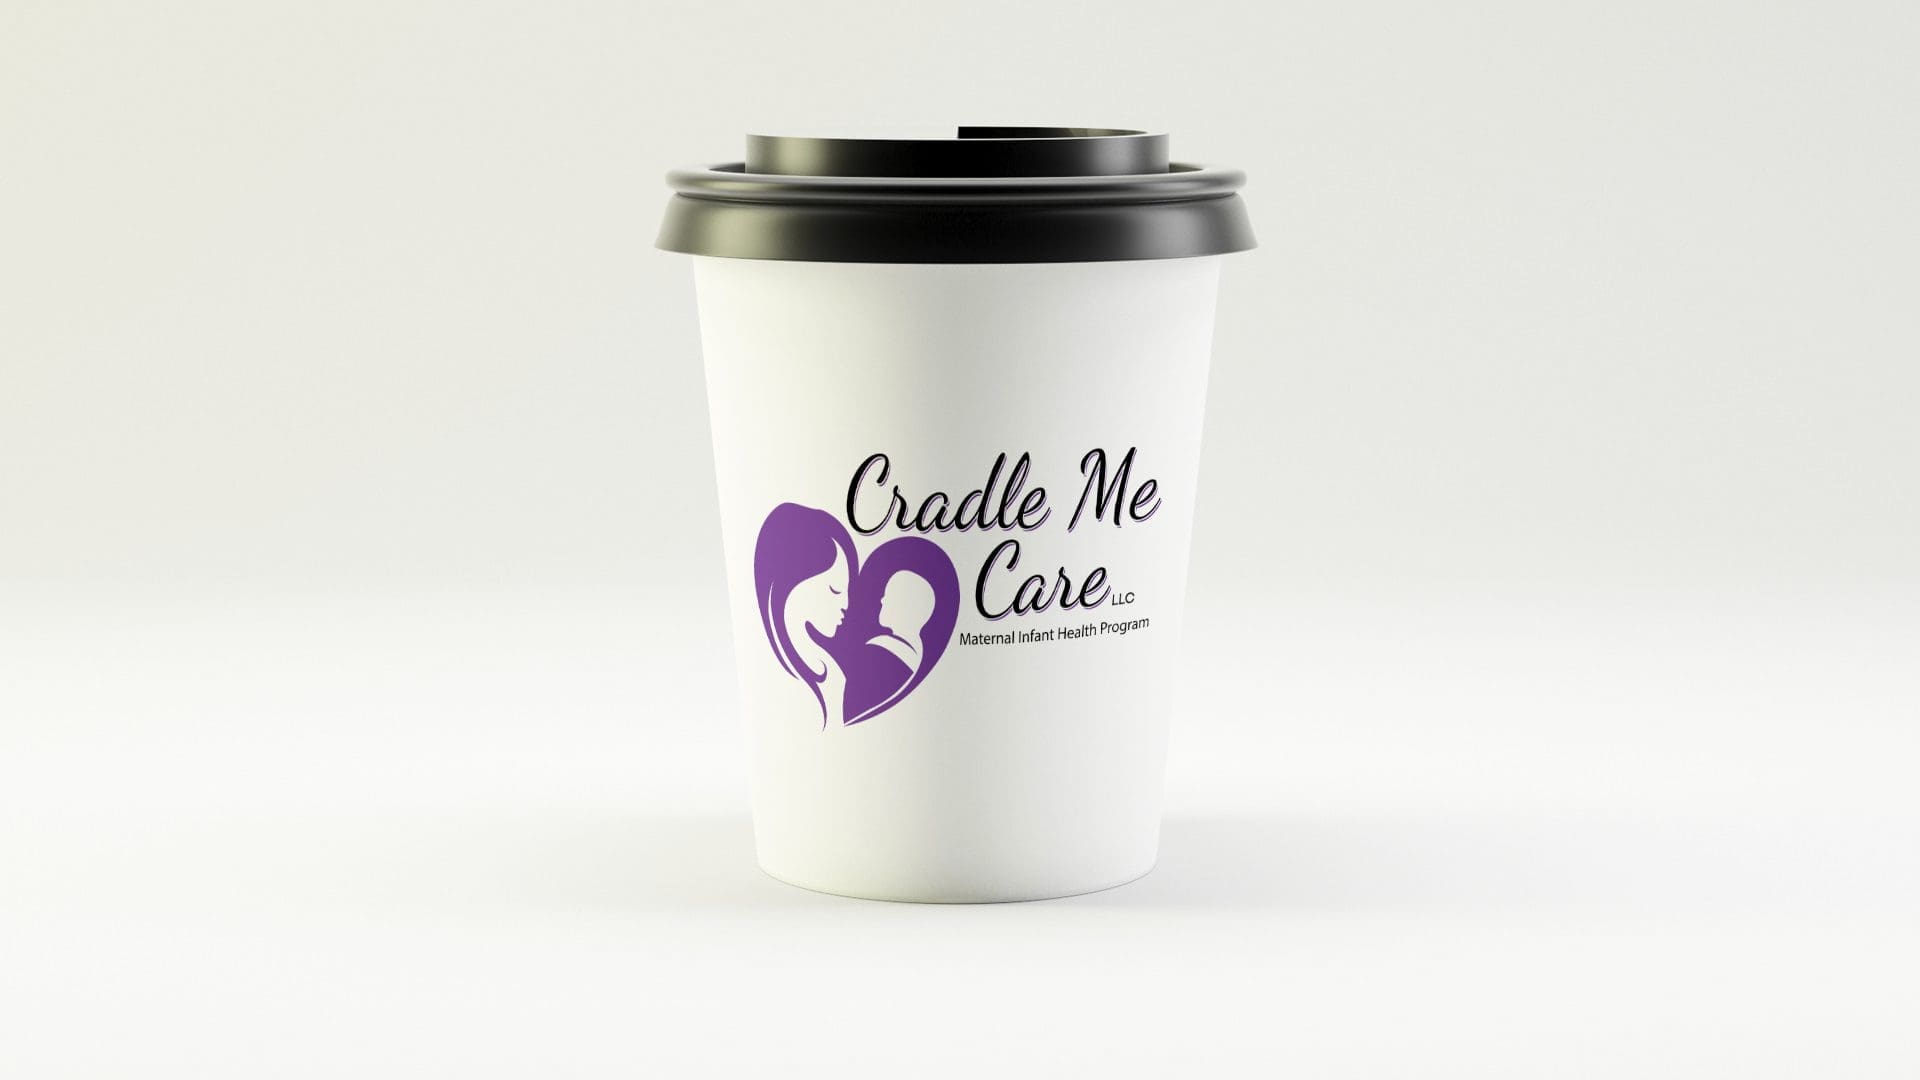 Cradle Me Care - Rebranding (1)